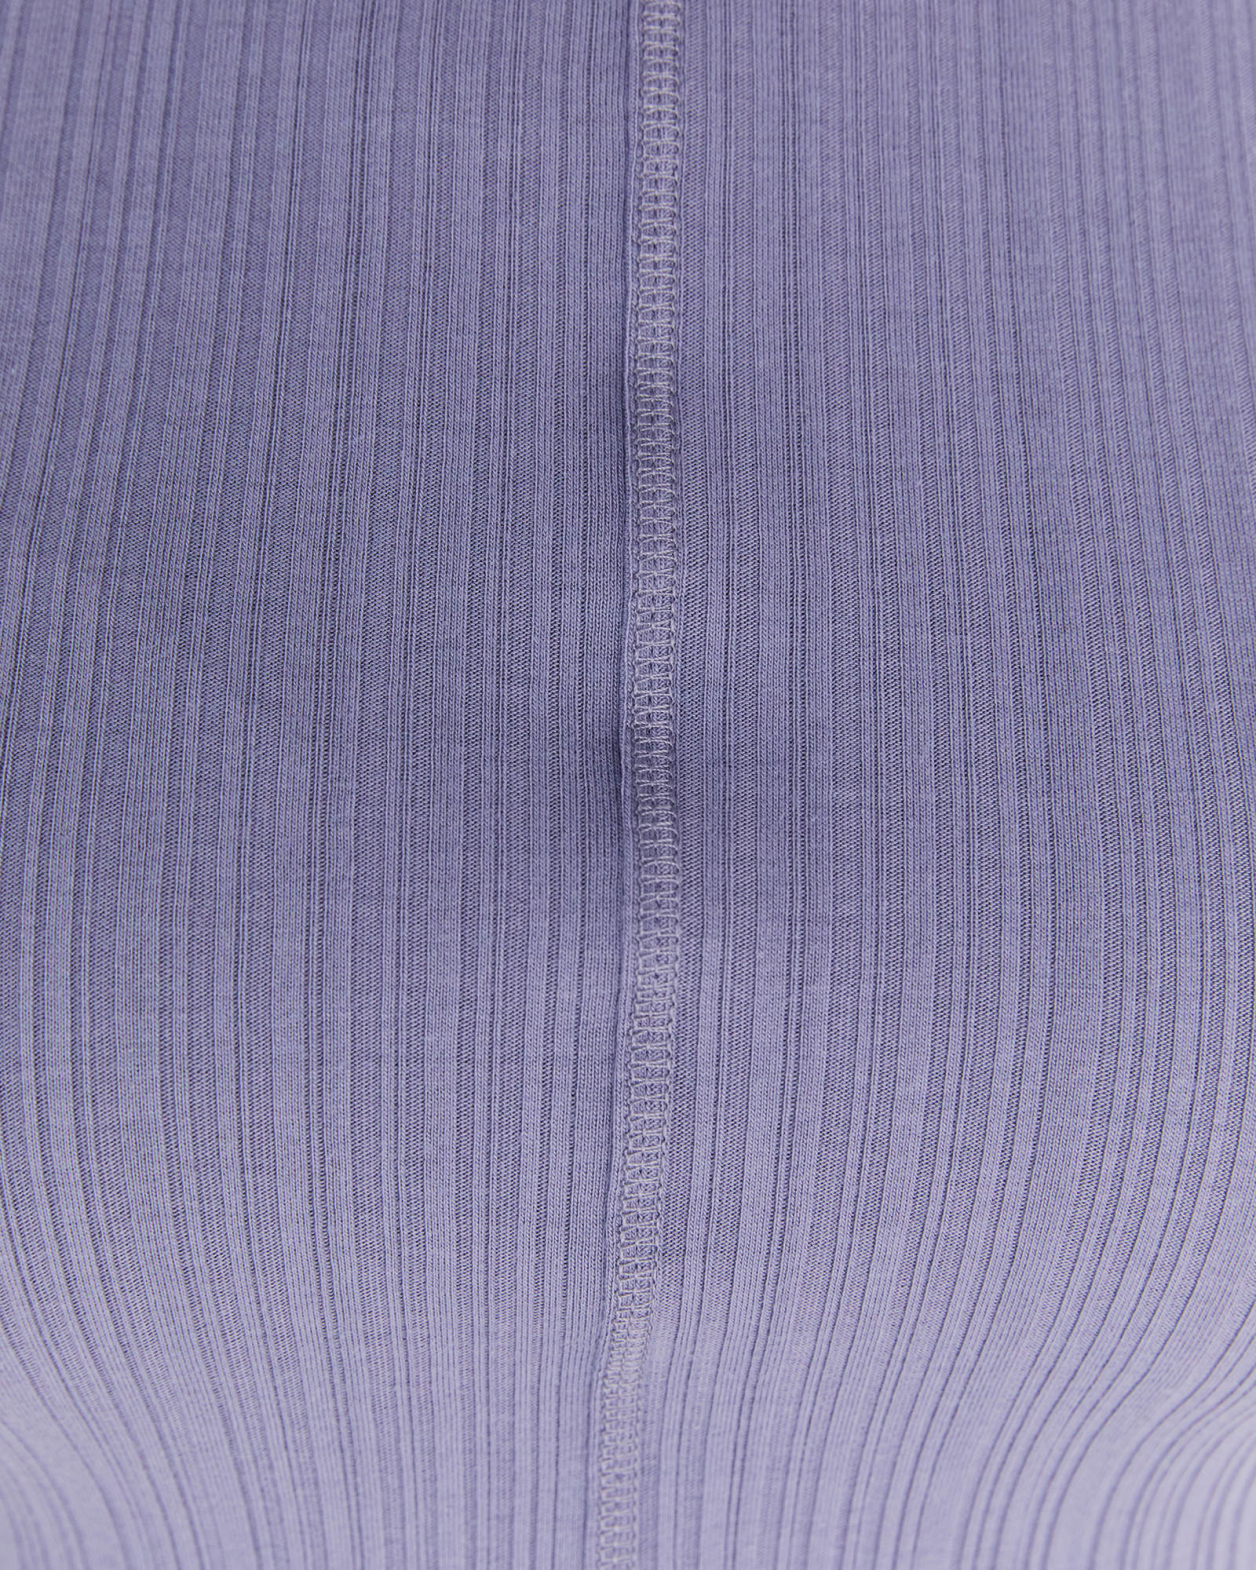 Sabine Long Sleeve Top in SLATE